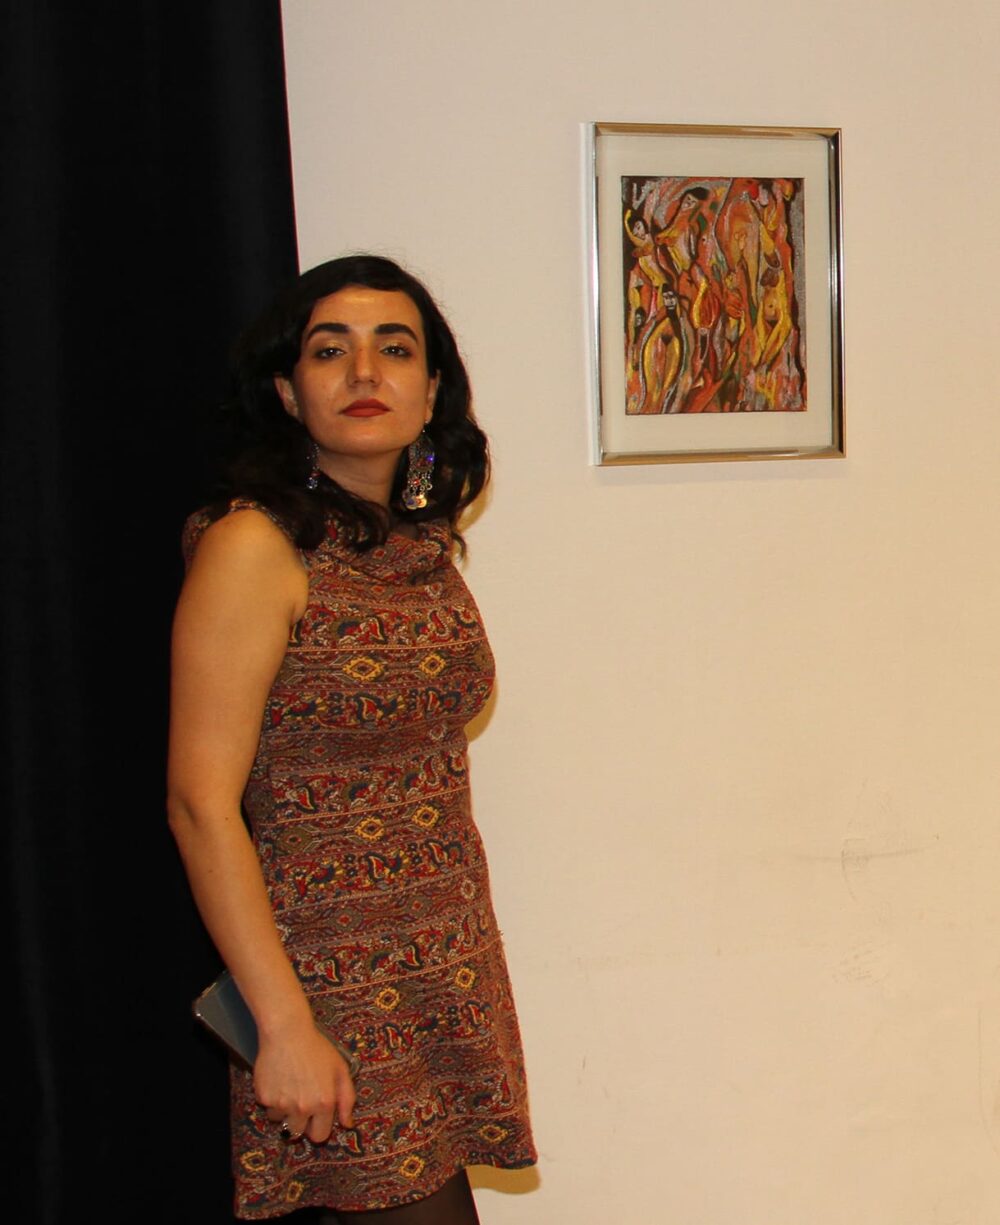 Die Künstlerin Maryam Haidari mit Bildern ihrer Ausstellung